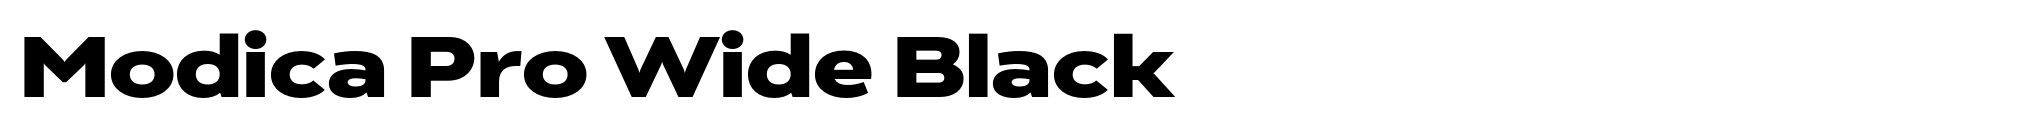 Modica Pro Wide Black image